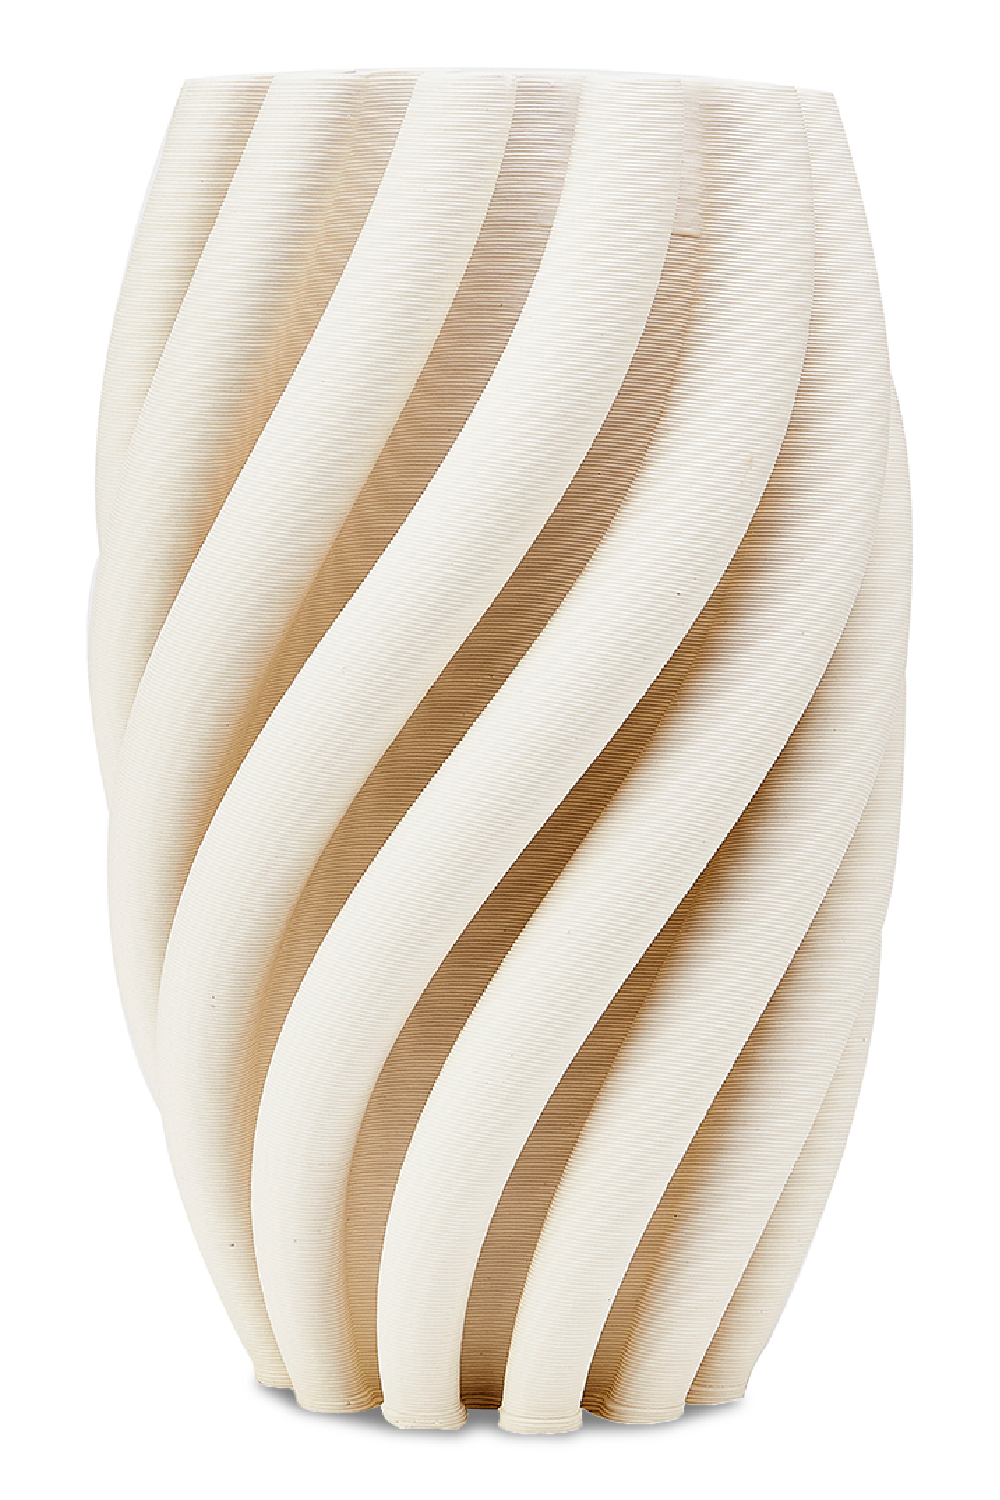 White Ceramic Fluted Vase | Liang & Eimil Macado | Oroa.com